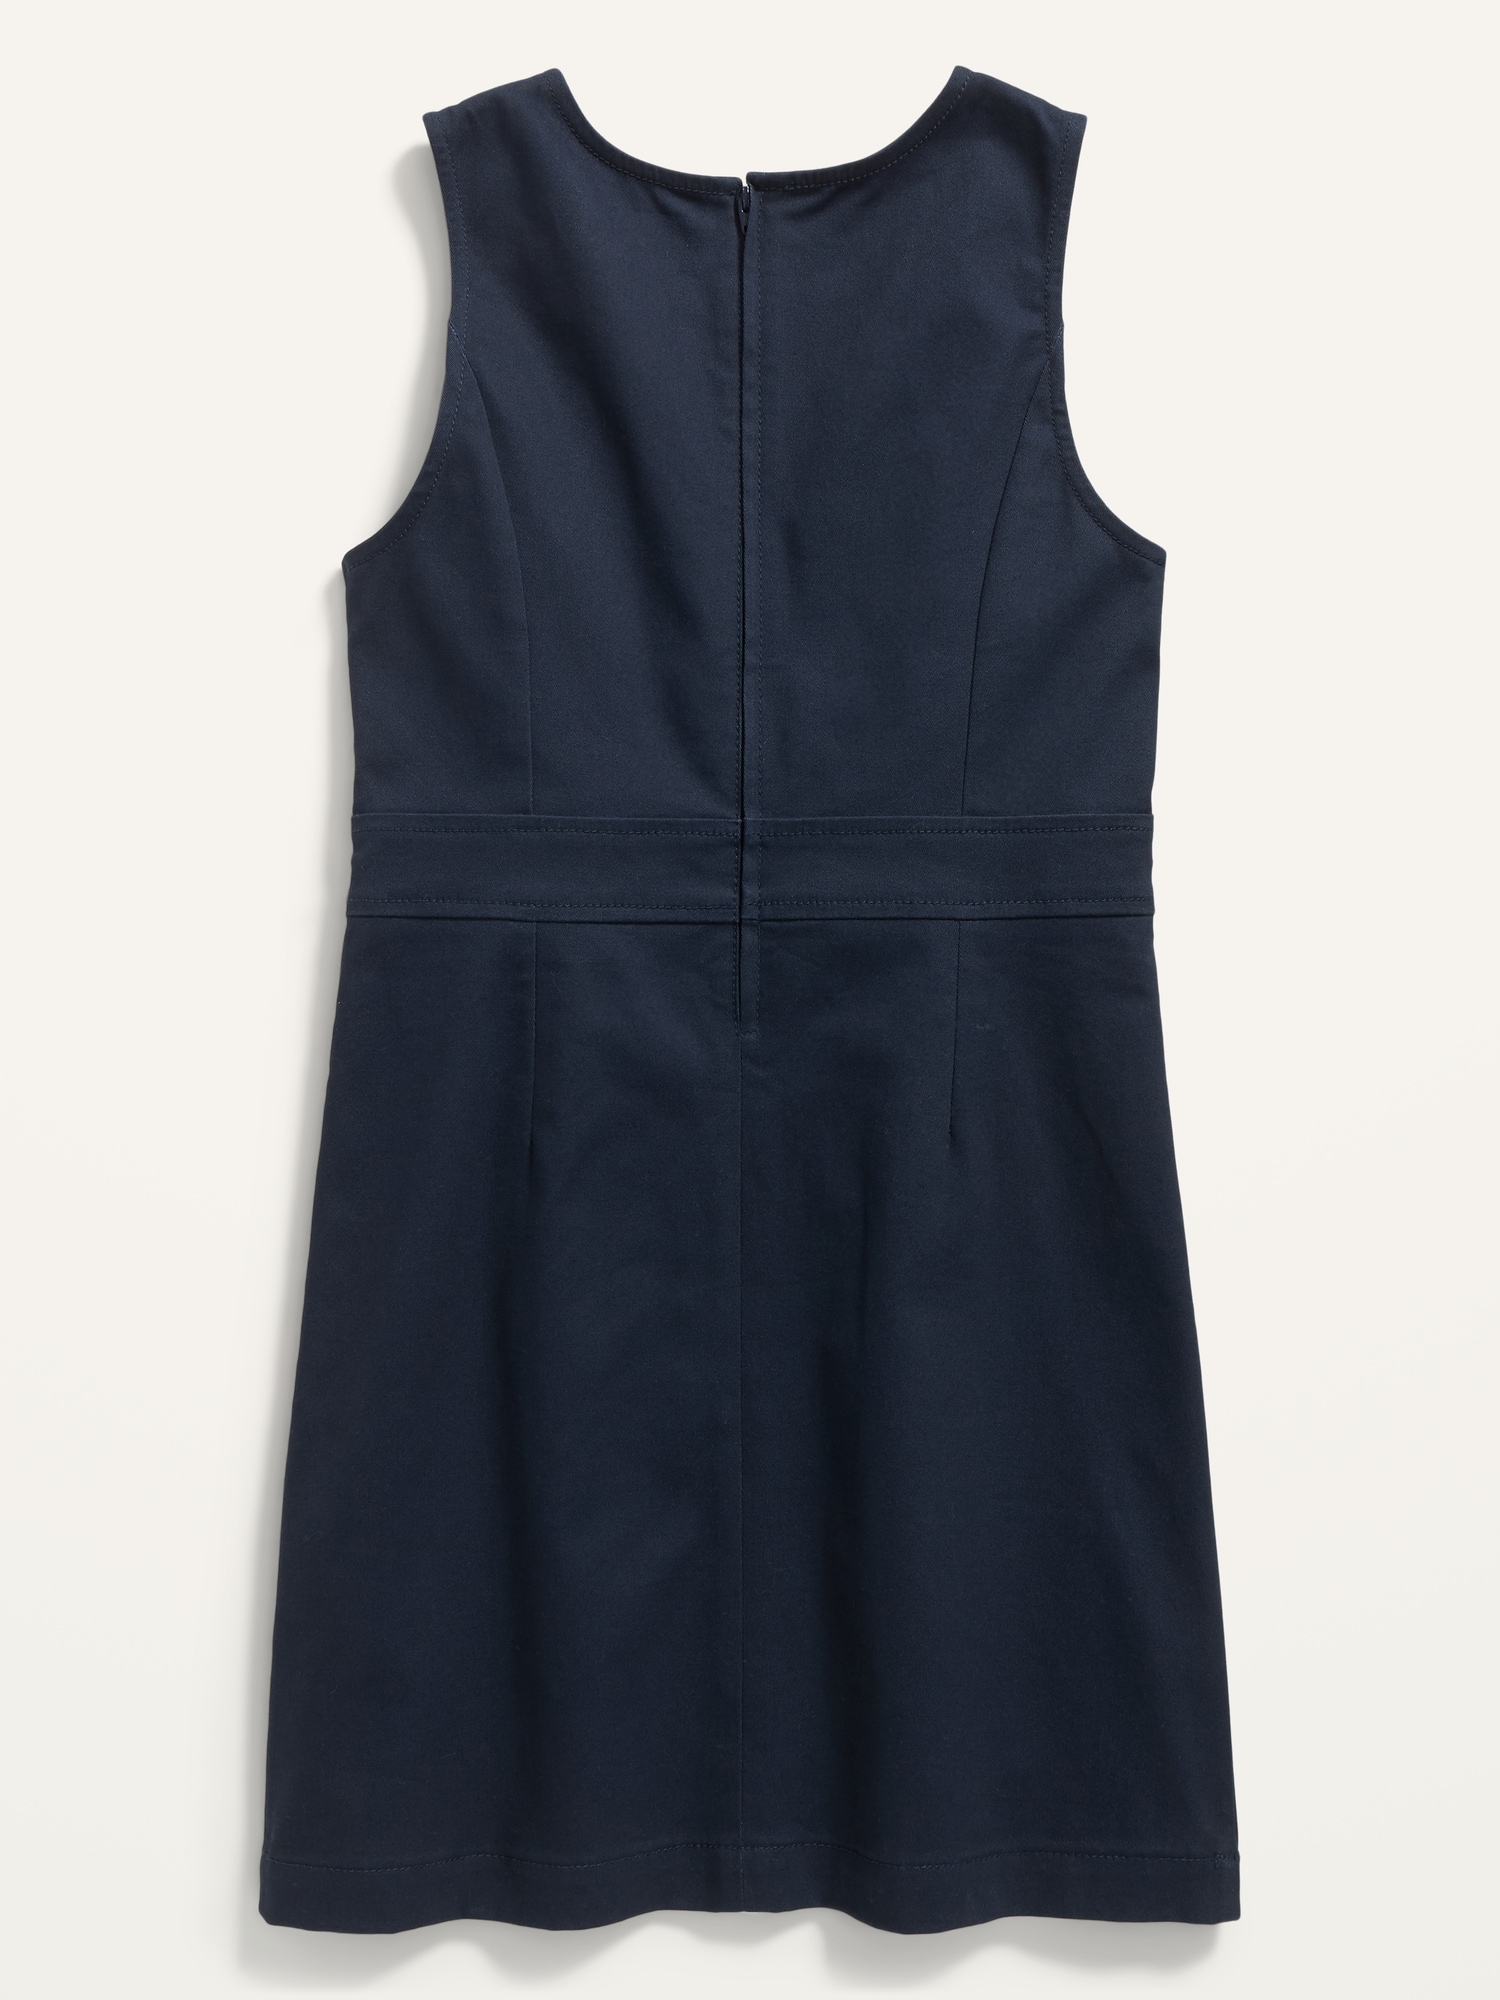 Sleeveless Uniform Dress for Girls | Old Navy